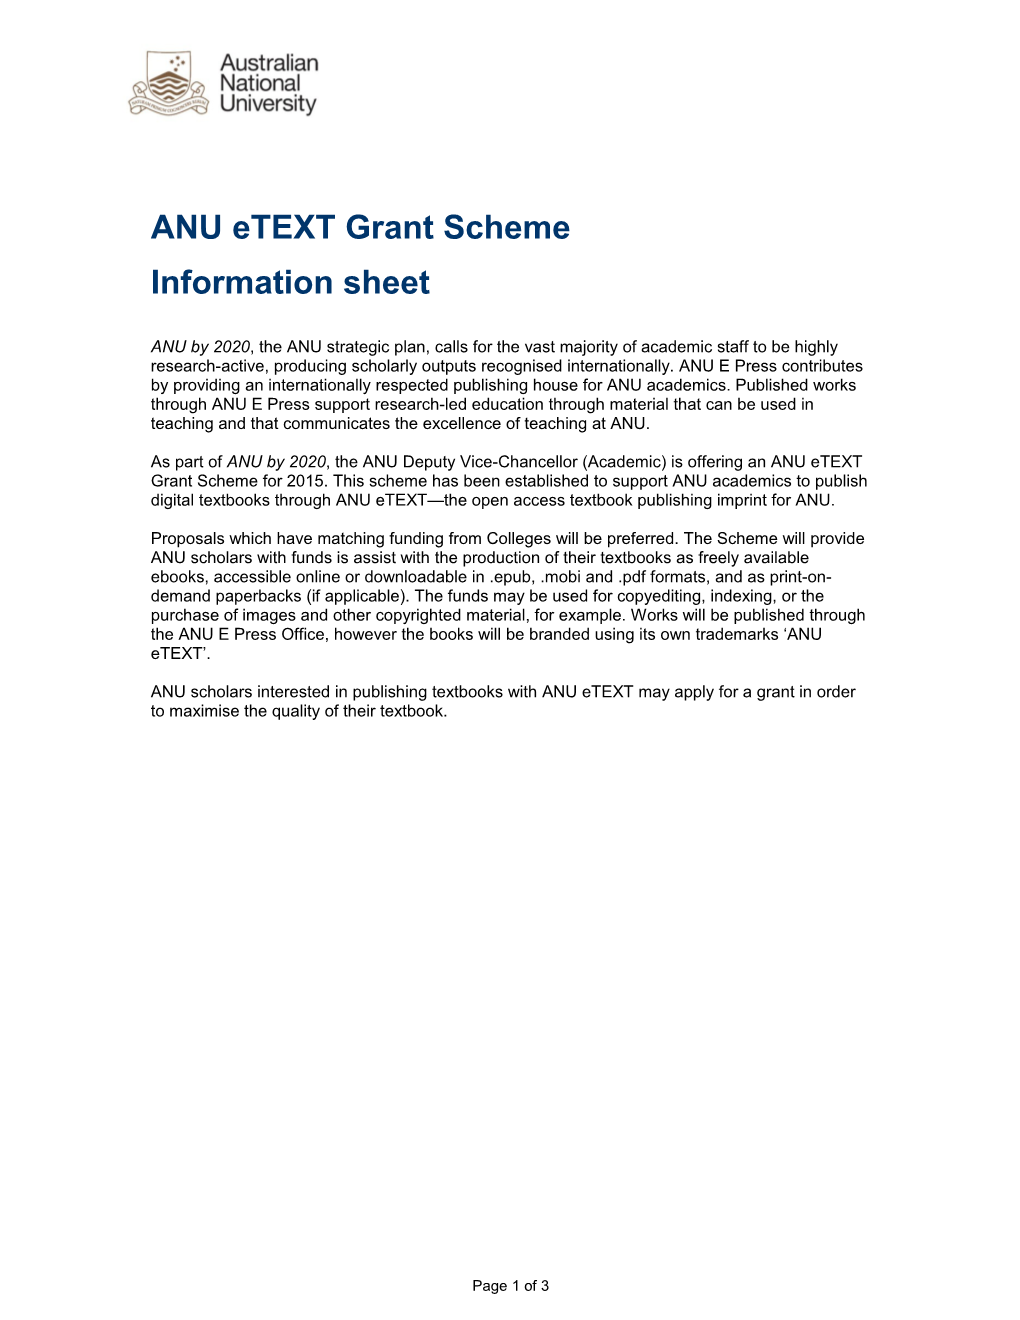 ANU Etext Grant Scheme